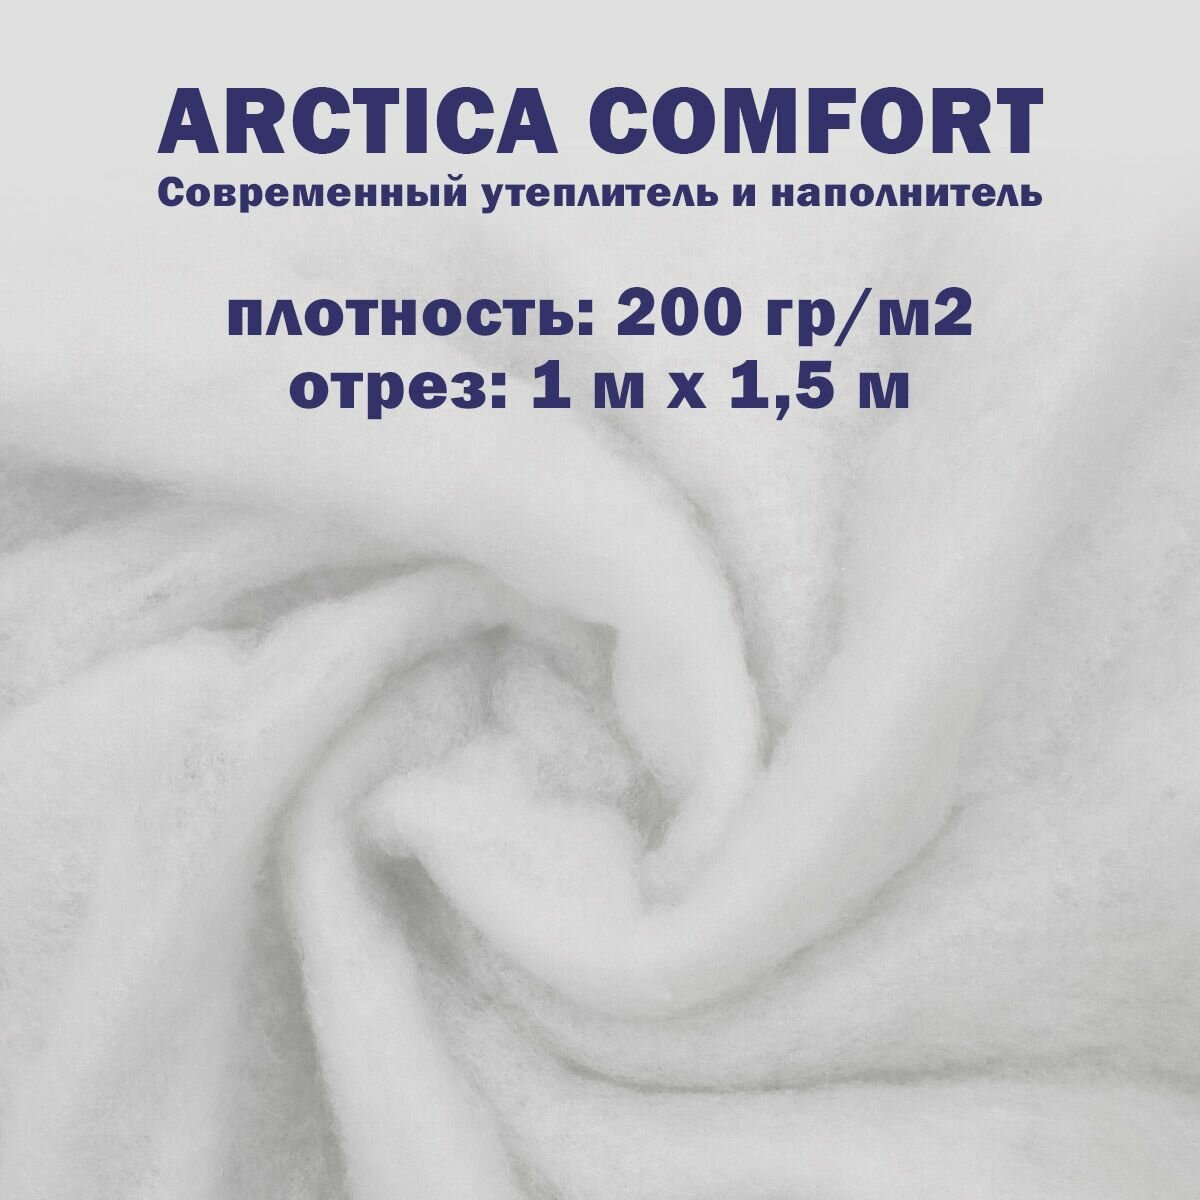 Синтепон 200 г / м2 полотно 1х1.5 ткань для рукоделия и шитья, наполнитель для игрушек и подушек одеял матрасов и мебели, утеплитель для одежды